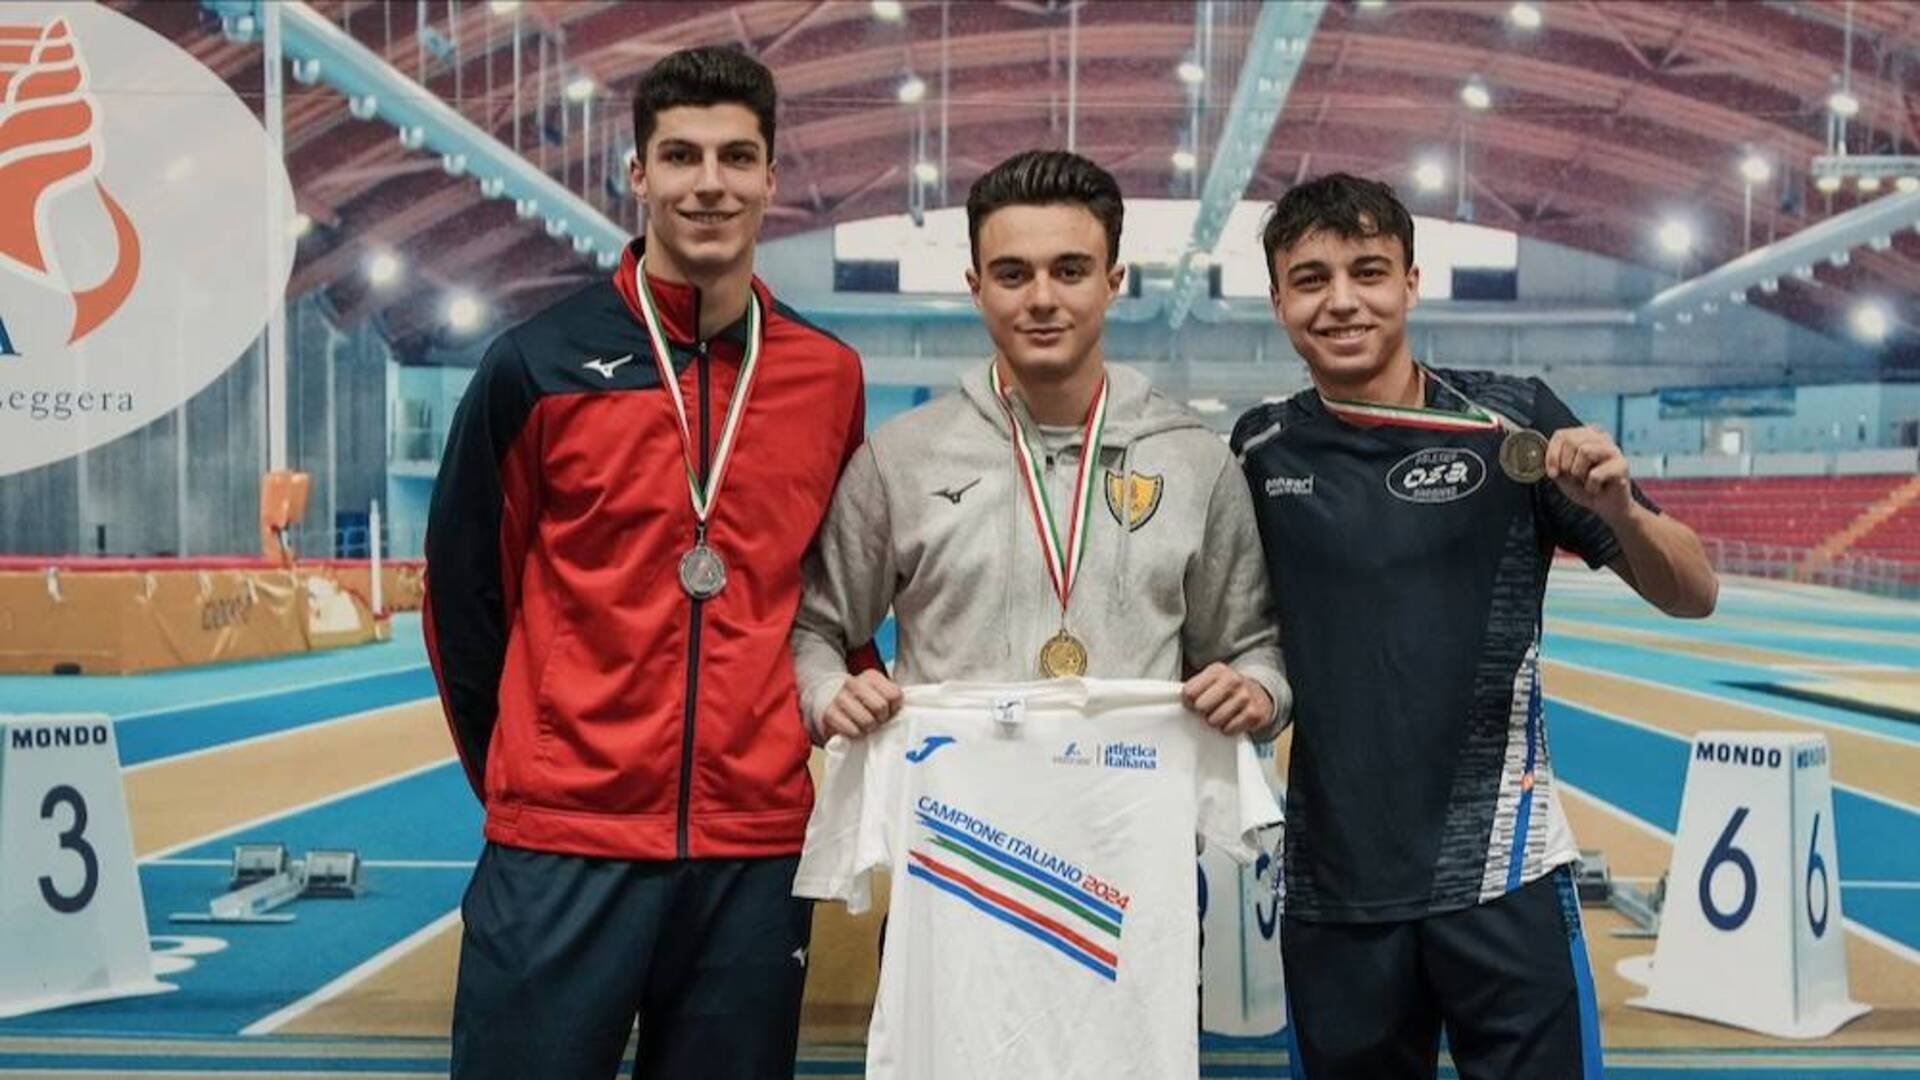 Campionati italiani juniores, argento tricolore per Romeo Monaci